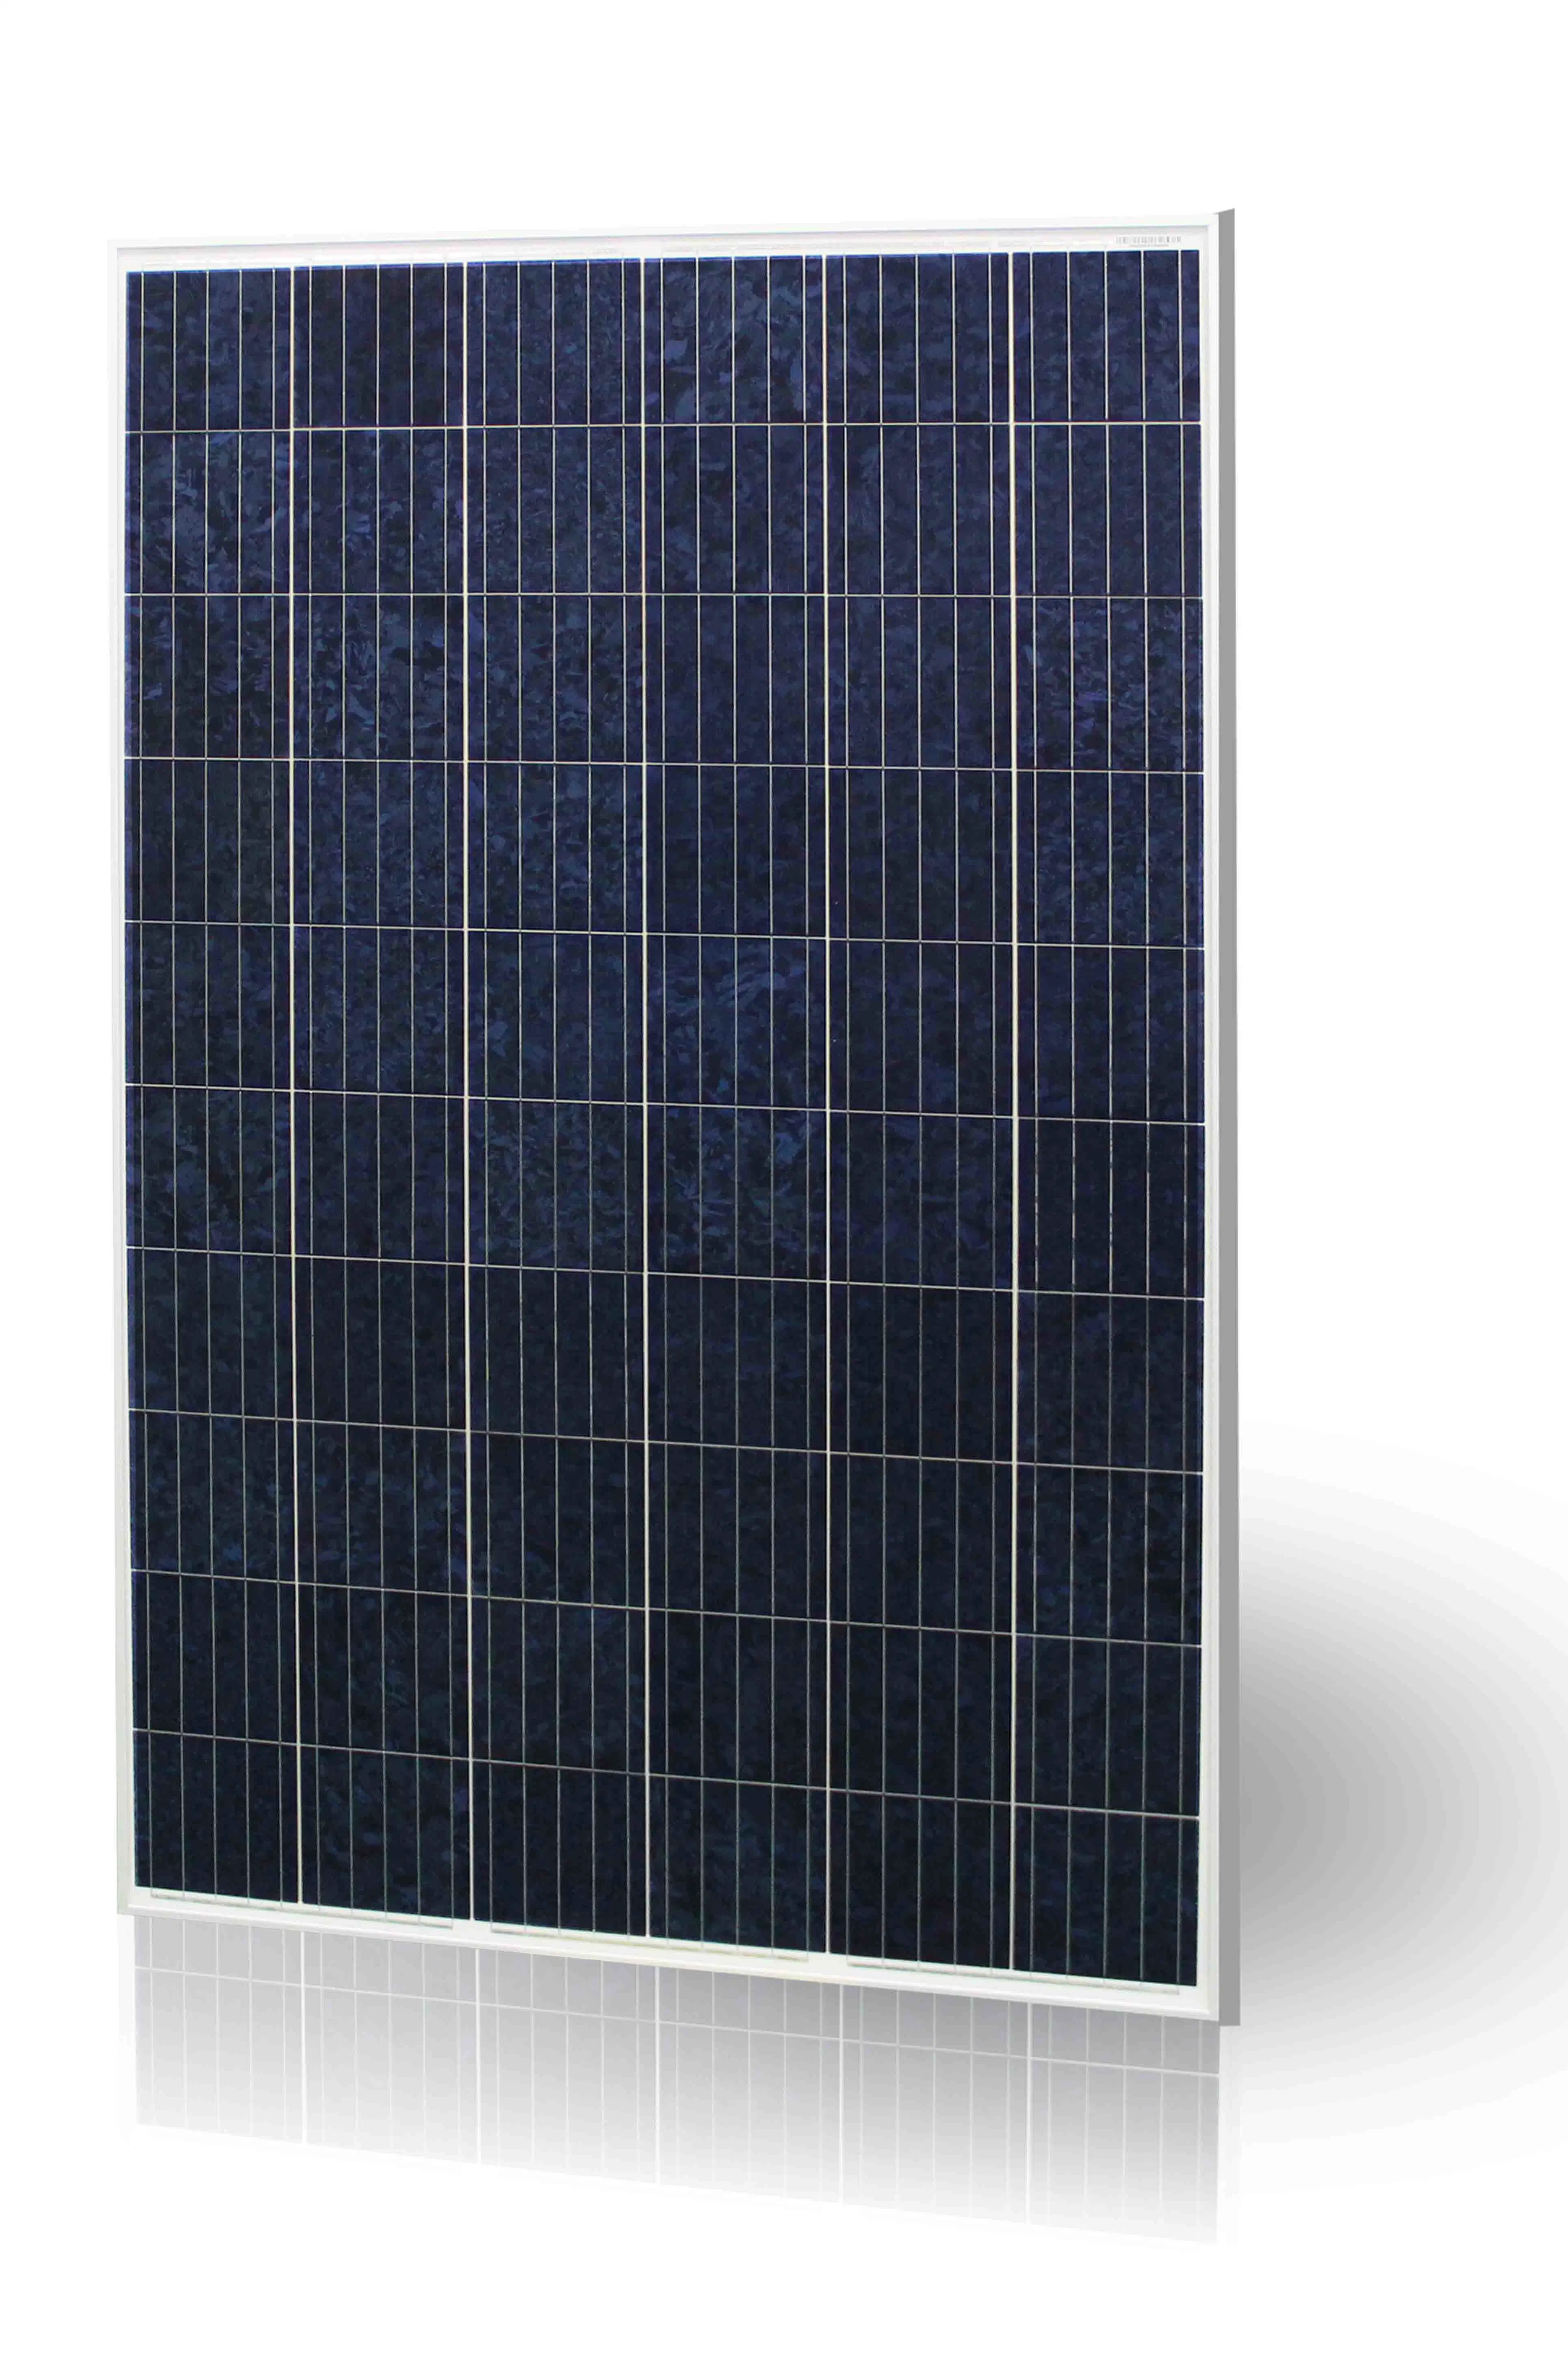 100kW Solarstromnetz für gewerbliche oder industrielle Zwecke